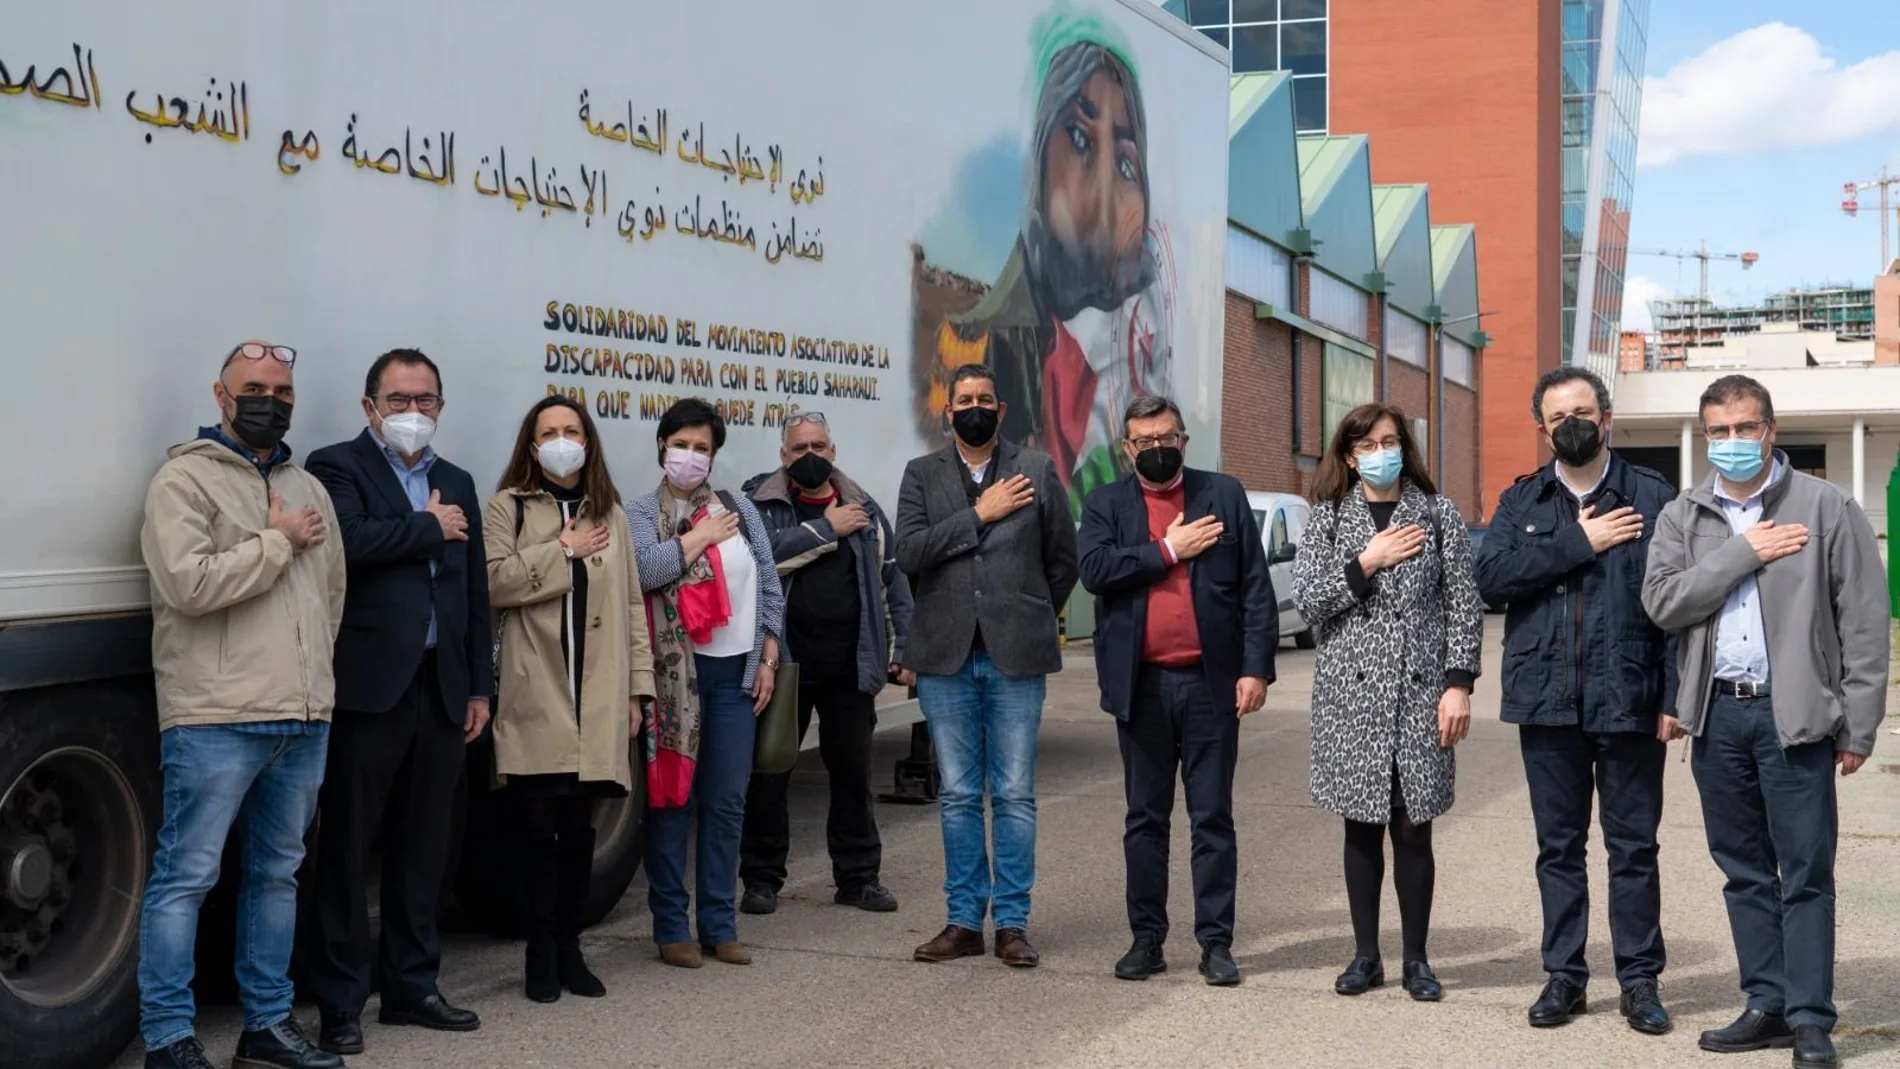 ASPAYM Castilla y León se une al movimiento asociativo español de la discapacidad en el envío de 5,5 toneladas de ayuda humanitaria a los refugiados saharauis